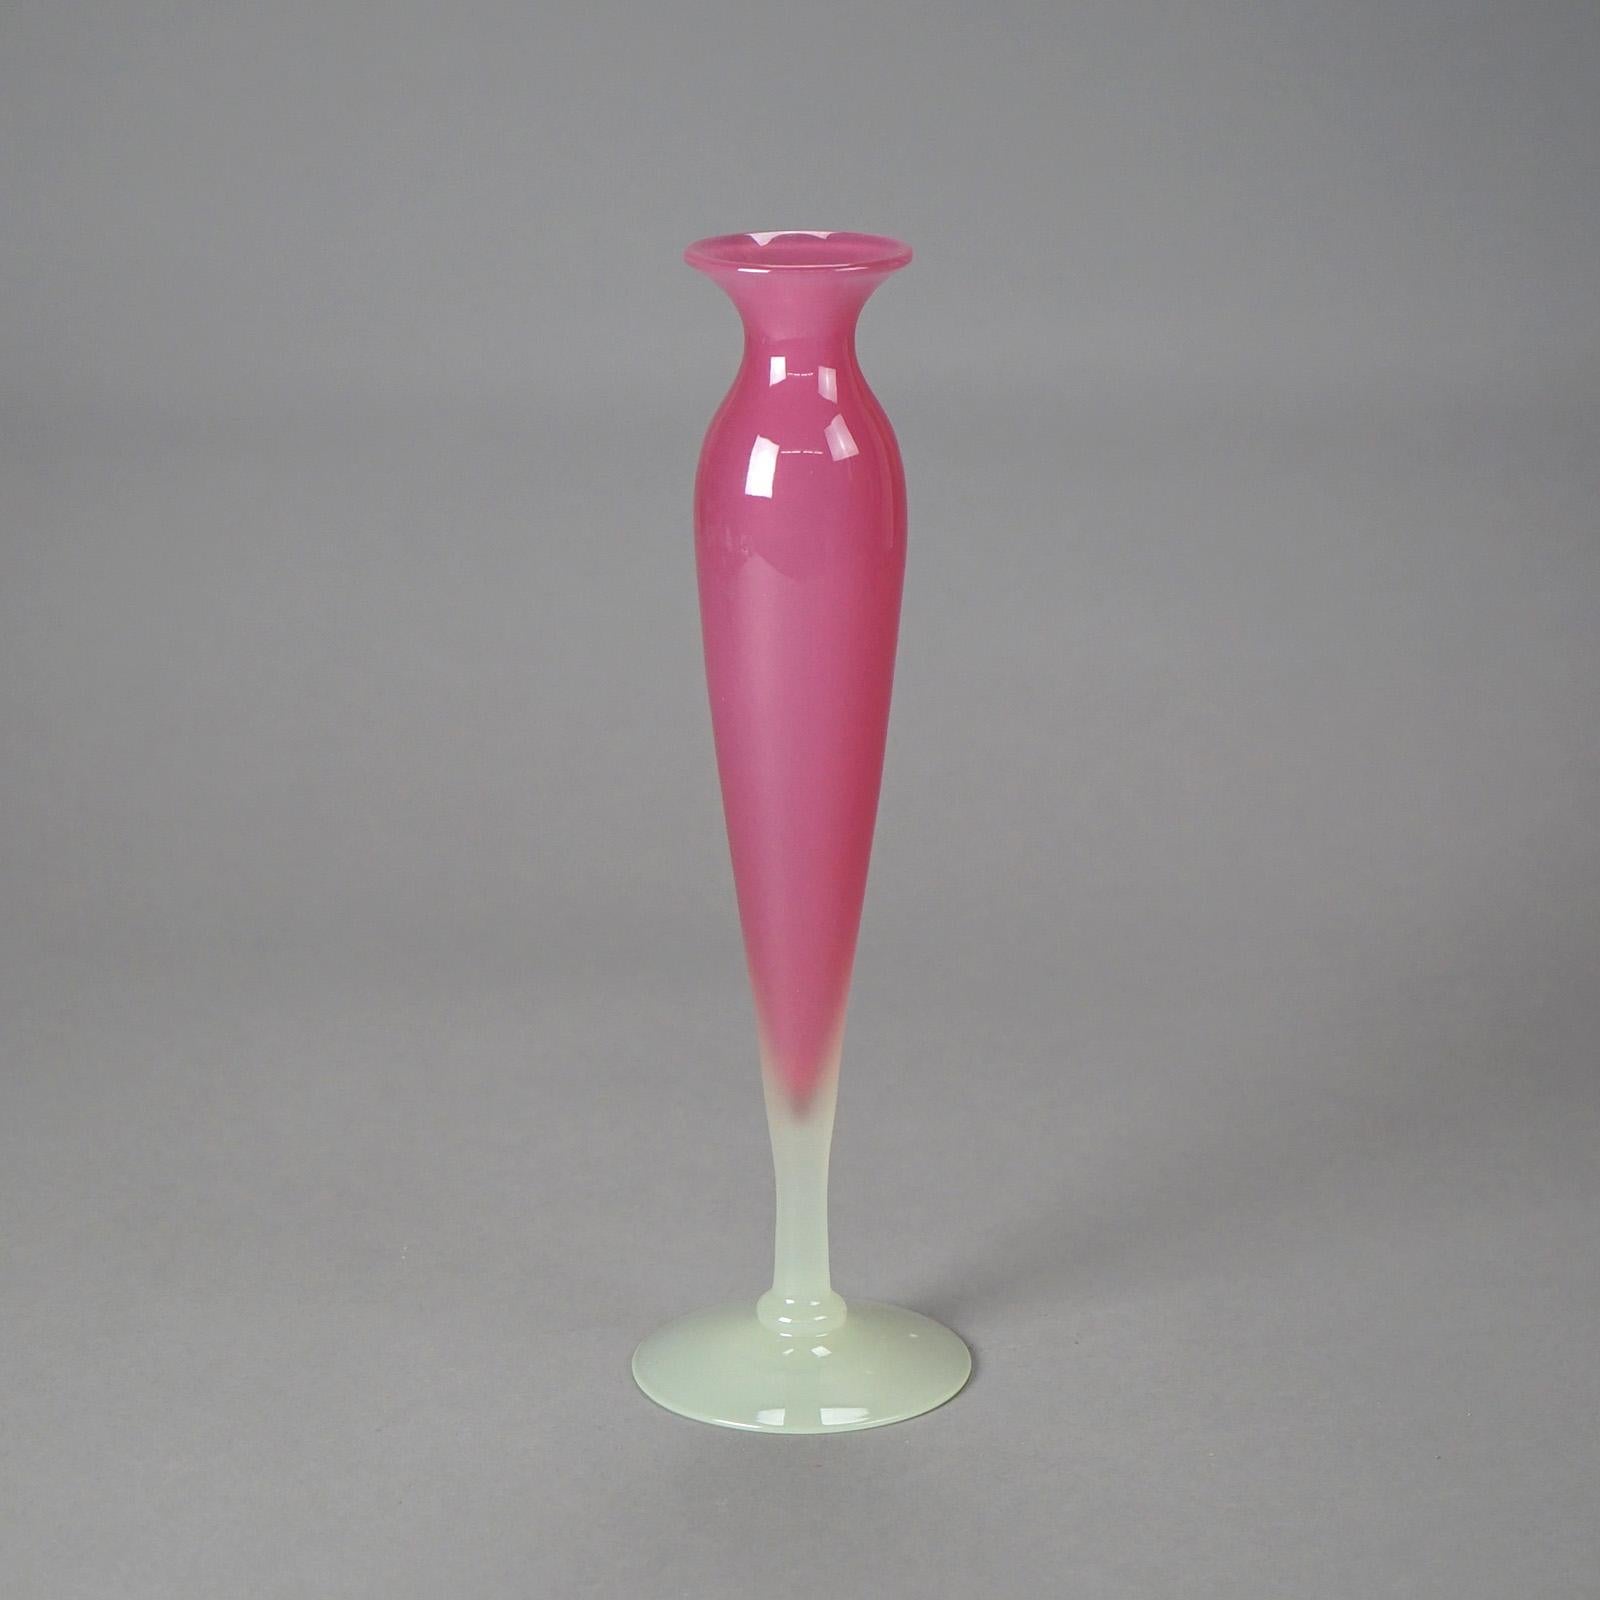 Steuben Pink Vase - For Sale on 1stDibs